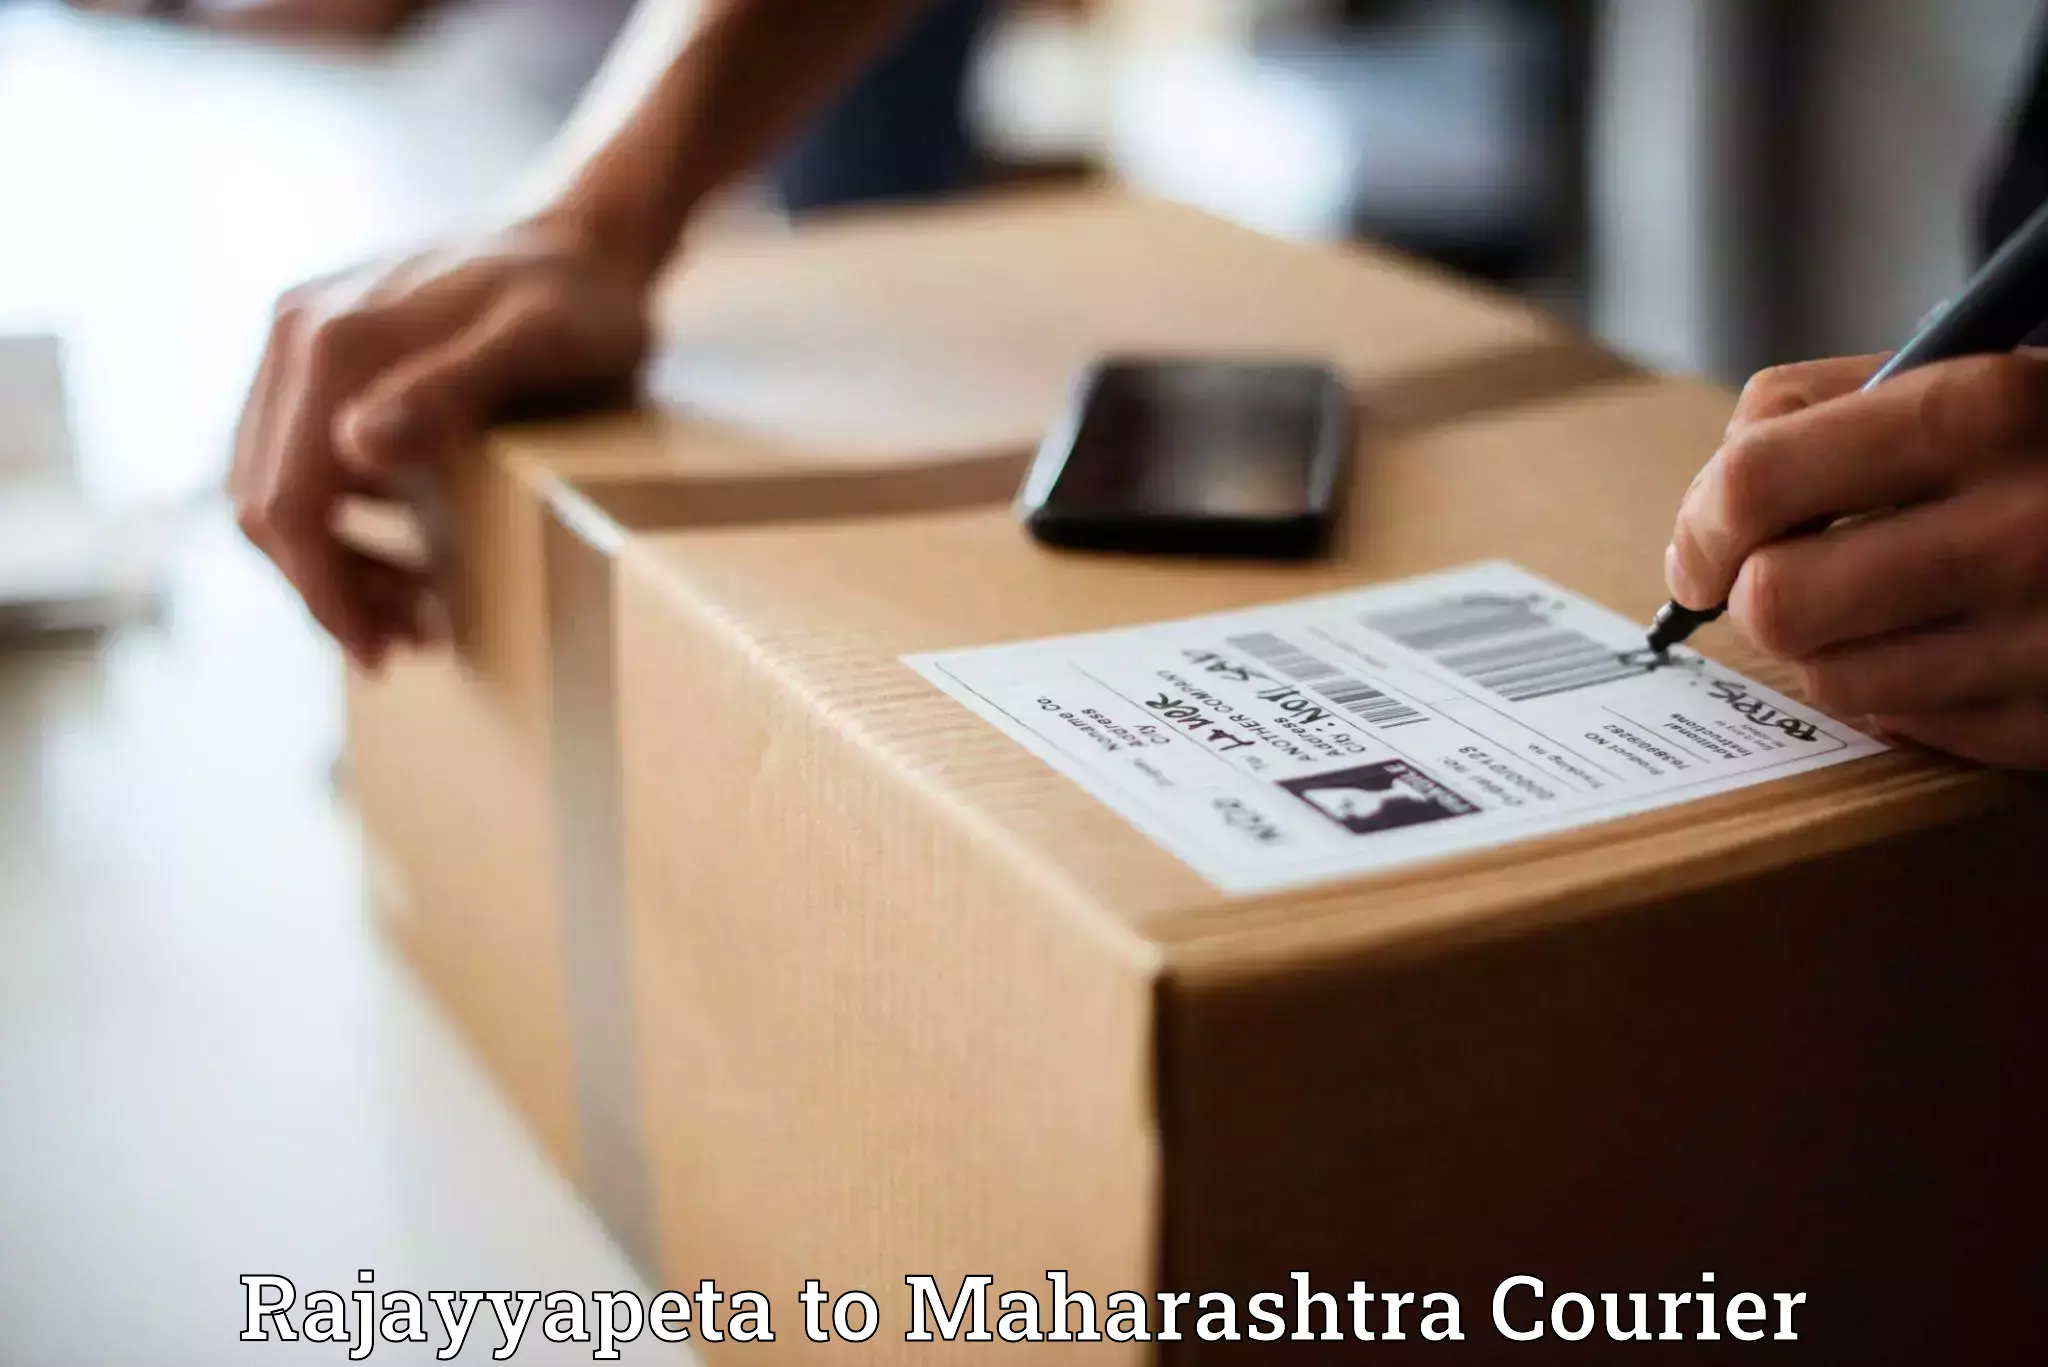 Advanced shipping technology Rajayyapeta to Maharashtra